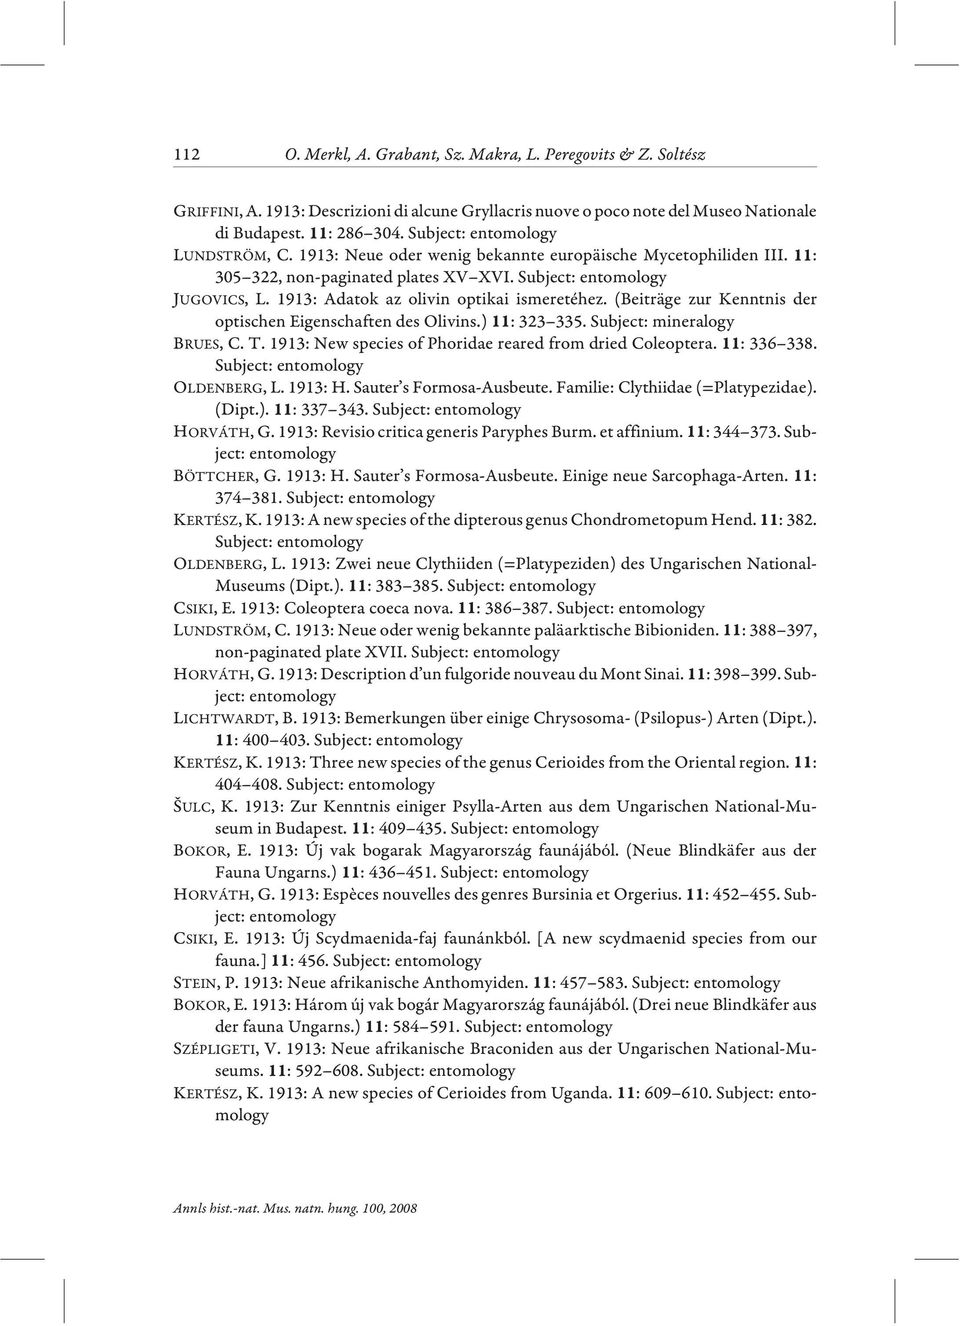 (Beiträge zur Kenntnis der optischen Eigenschaften des Olivins.) : 323 335. Subject: mineralogy BRUES, C. T. 1913: New species of Phoridae reared from dried Coleoptera. : 336 338. OLDENBERG, L.